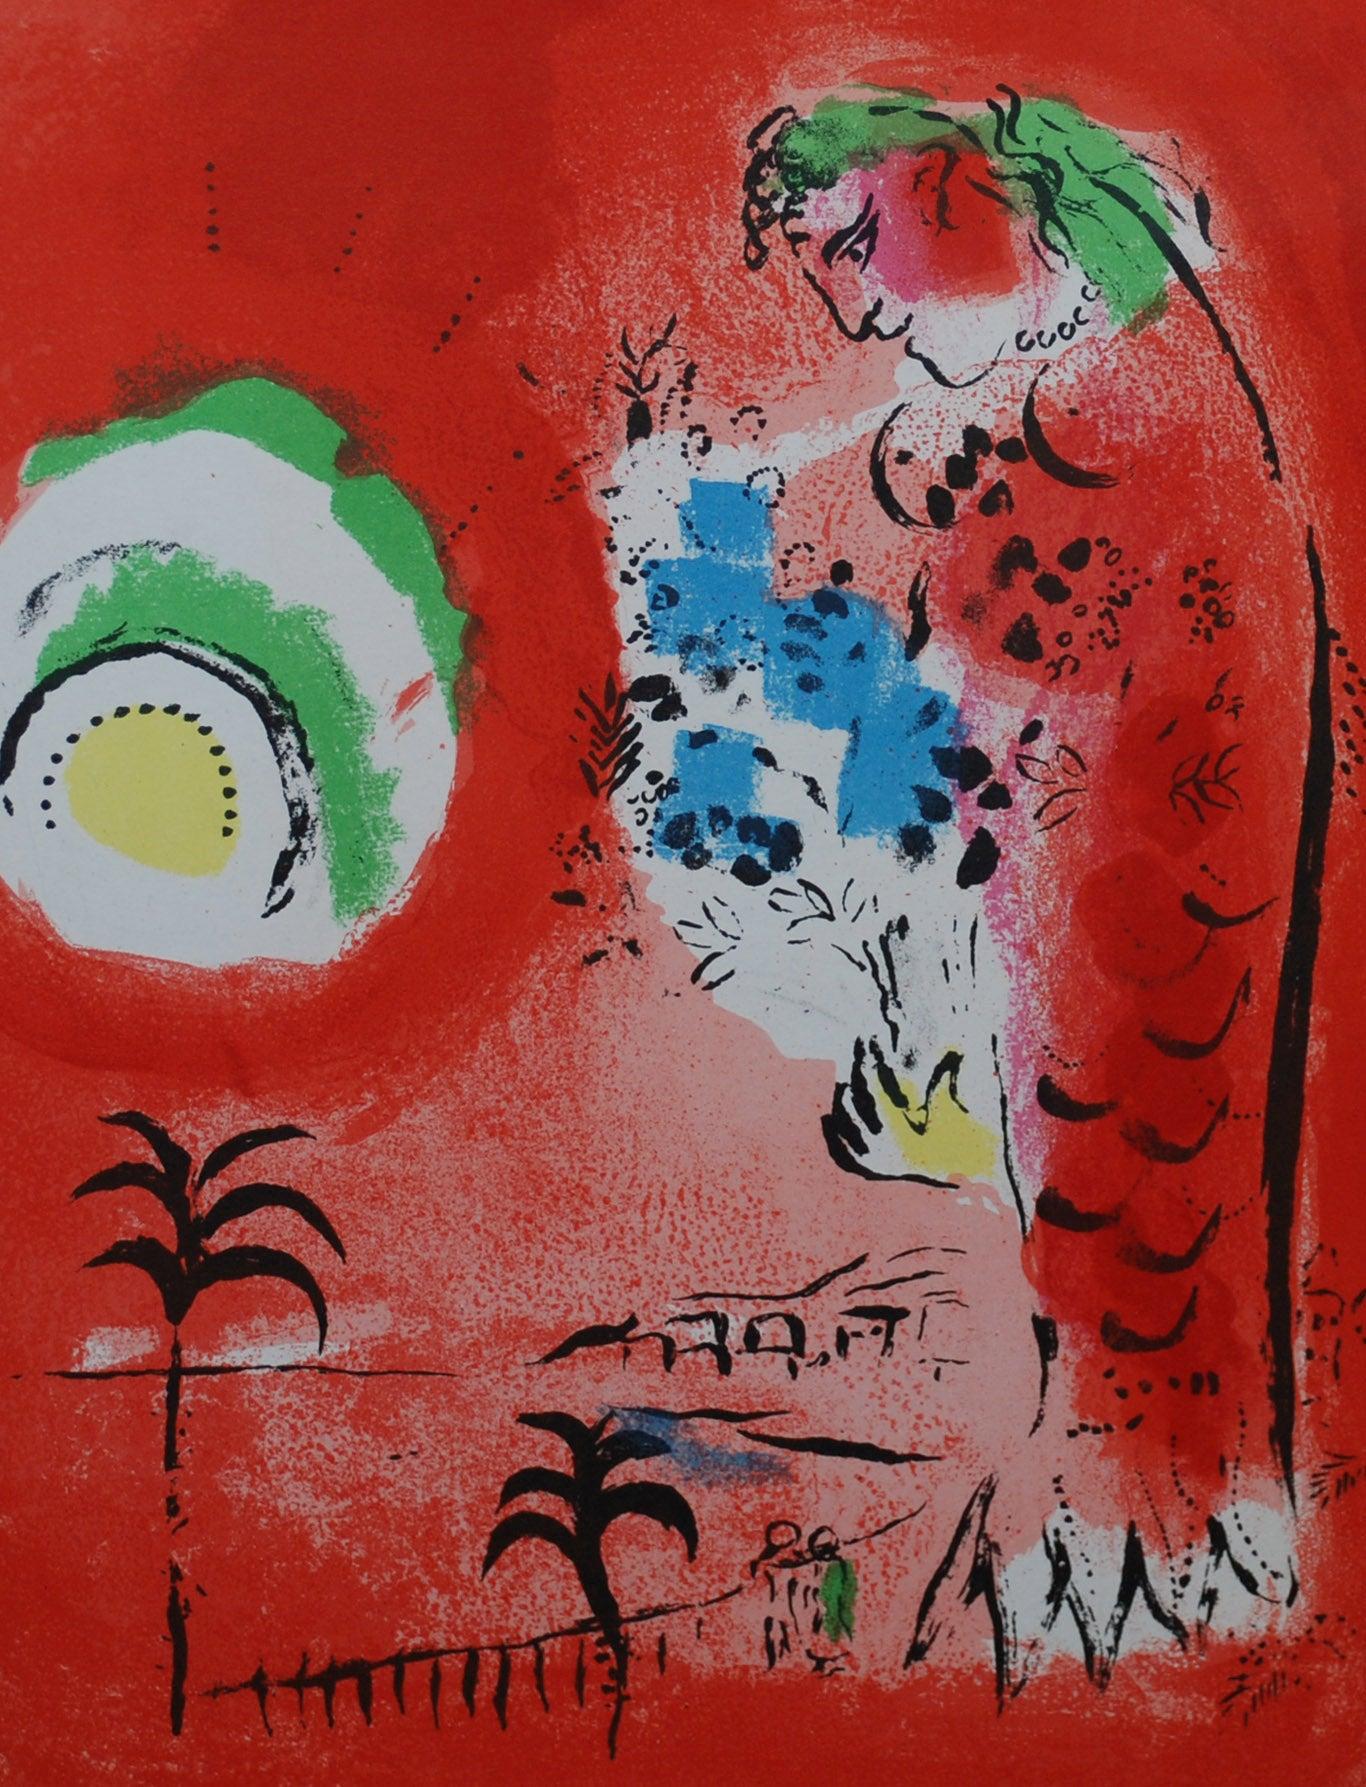 Marc Chagall Die Engelsbucht
Künstler: Marc Chagall
Medium: Lithographie
Titel: Die Bucht der Engel
Mappe: 1960 Mourlot Lithographe I
Jahr: 1960
Auflage: Unnumeriert
Gerahmt Größe: 22 3/4" x 18 3/4"
Bildgröße: 9 1/2" x 12 1/2"
Blattgröße: 9 1/2" x